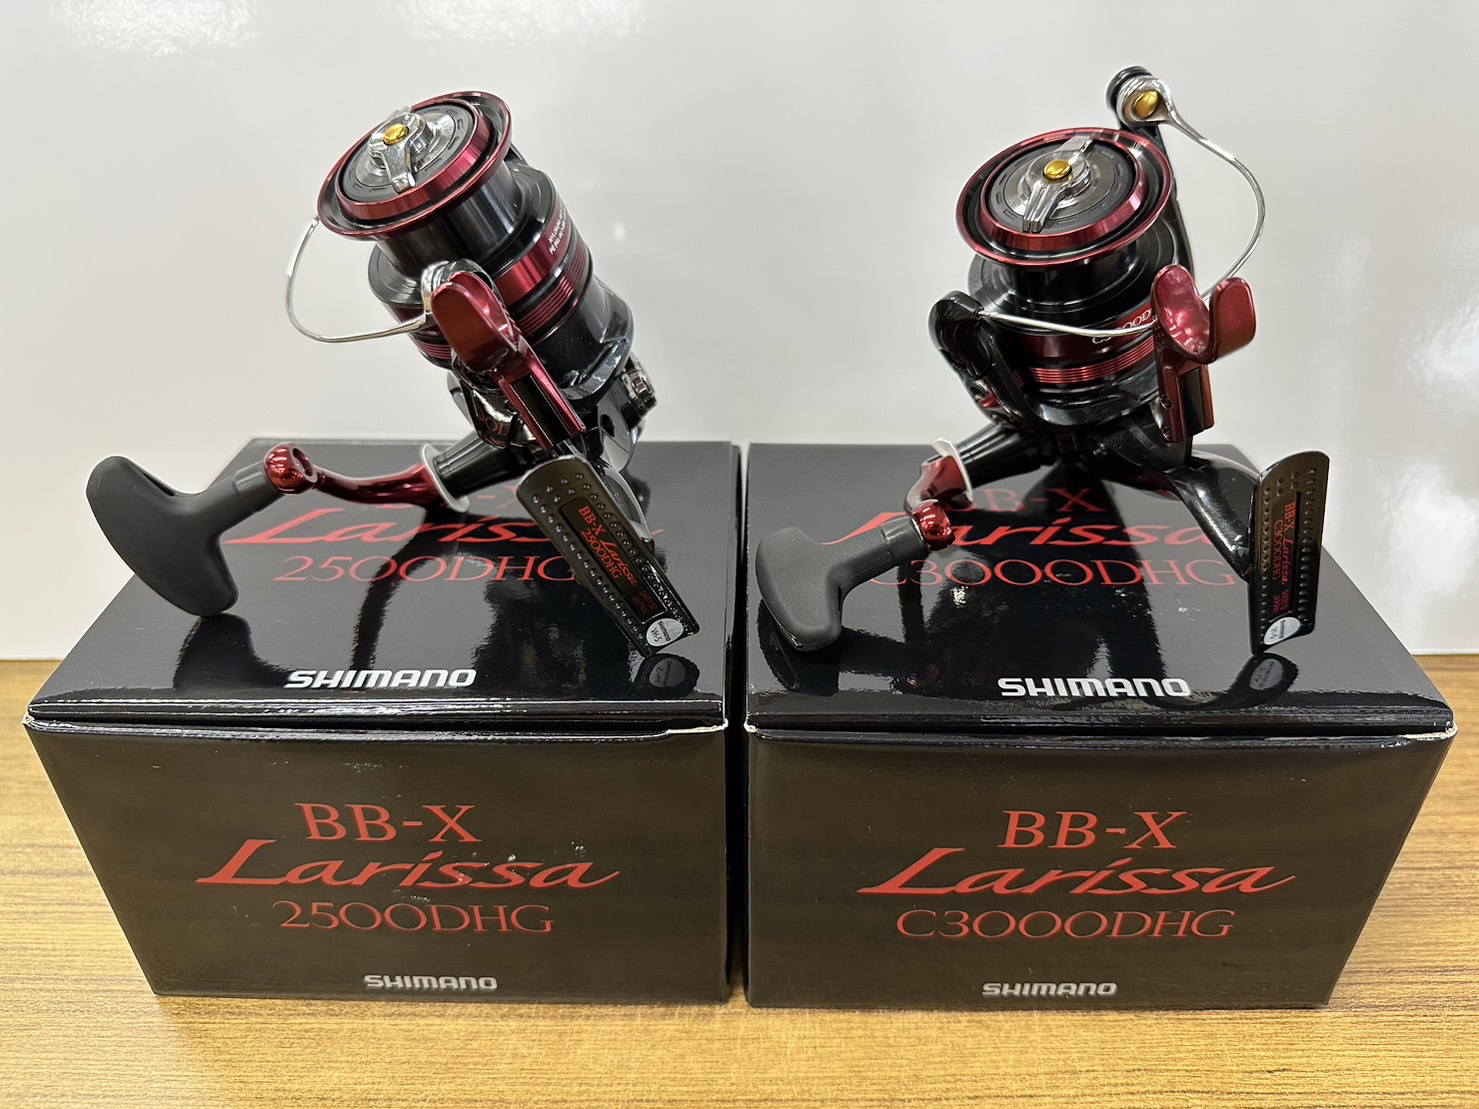 シマノ新製品「BB-X ラリッサ」